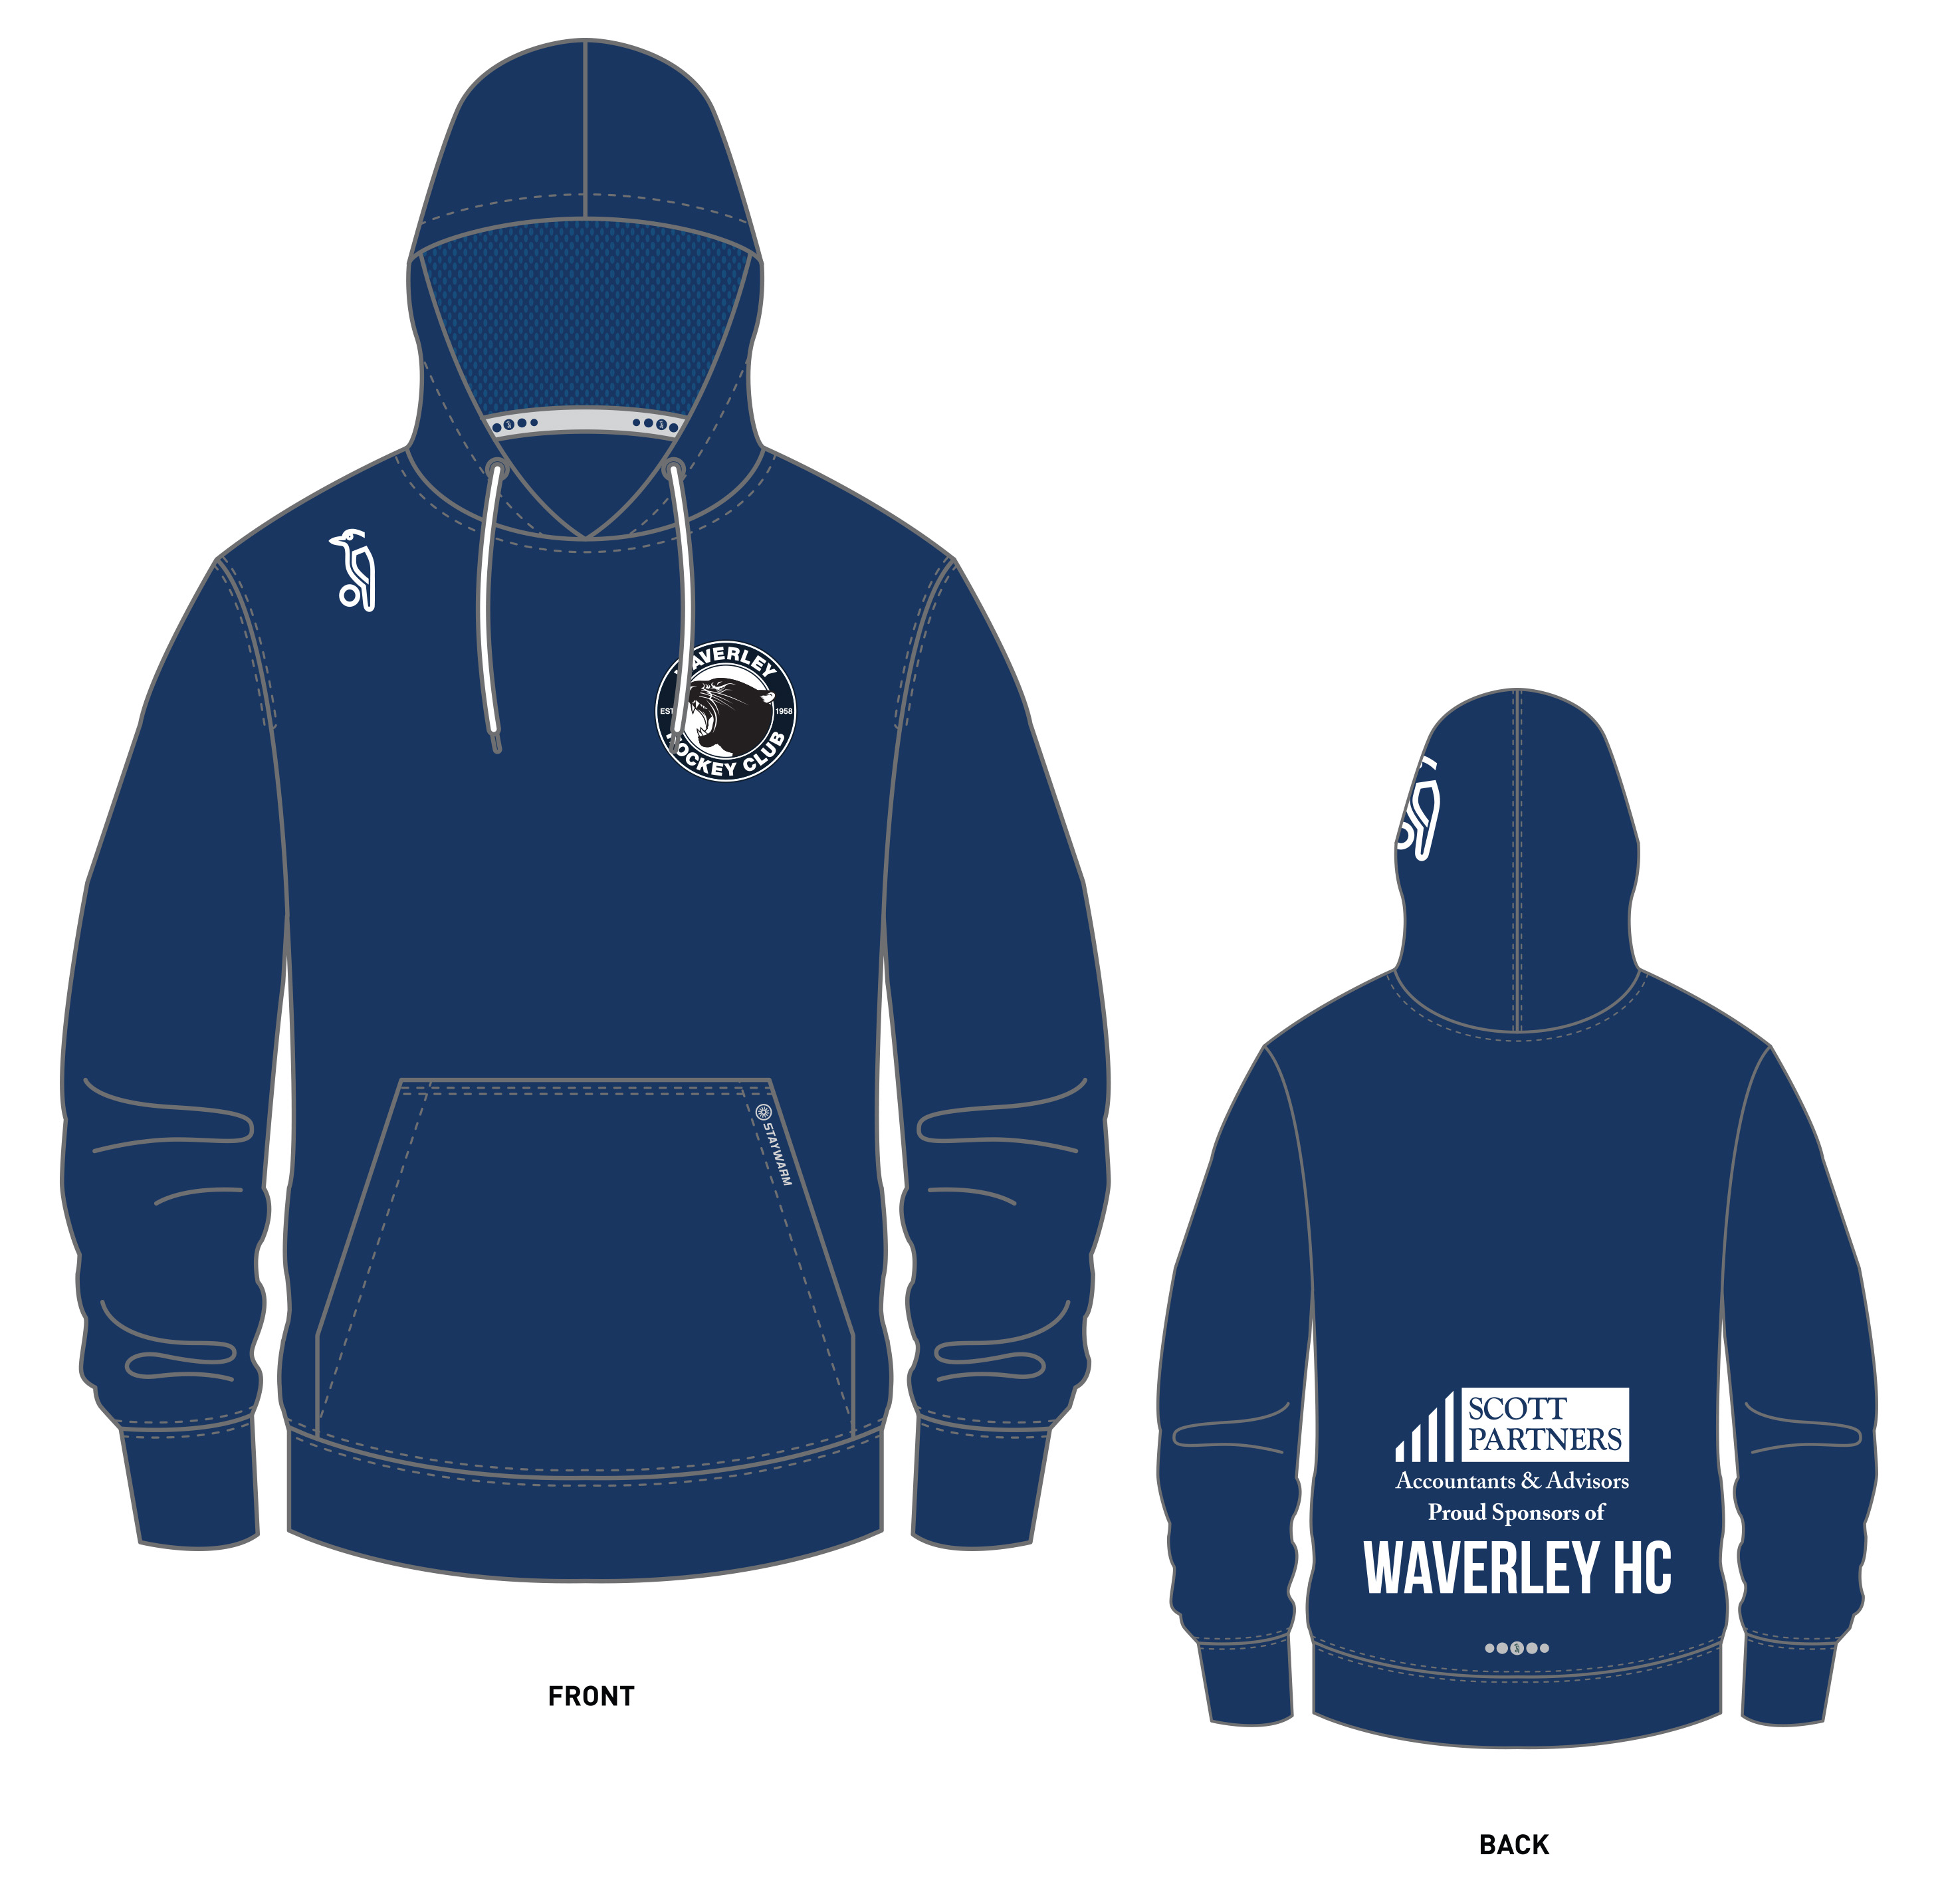 Uniform – Waverley Hockey Club